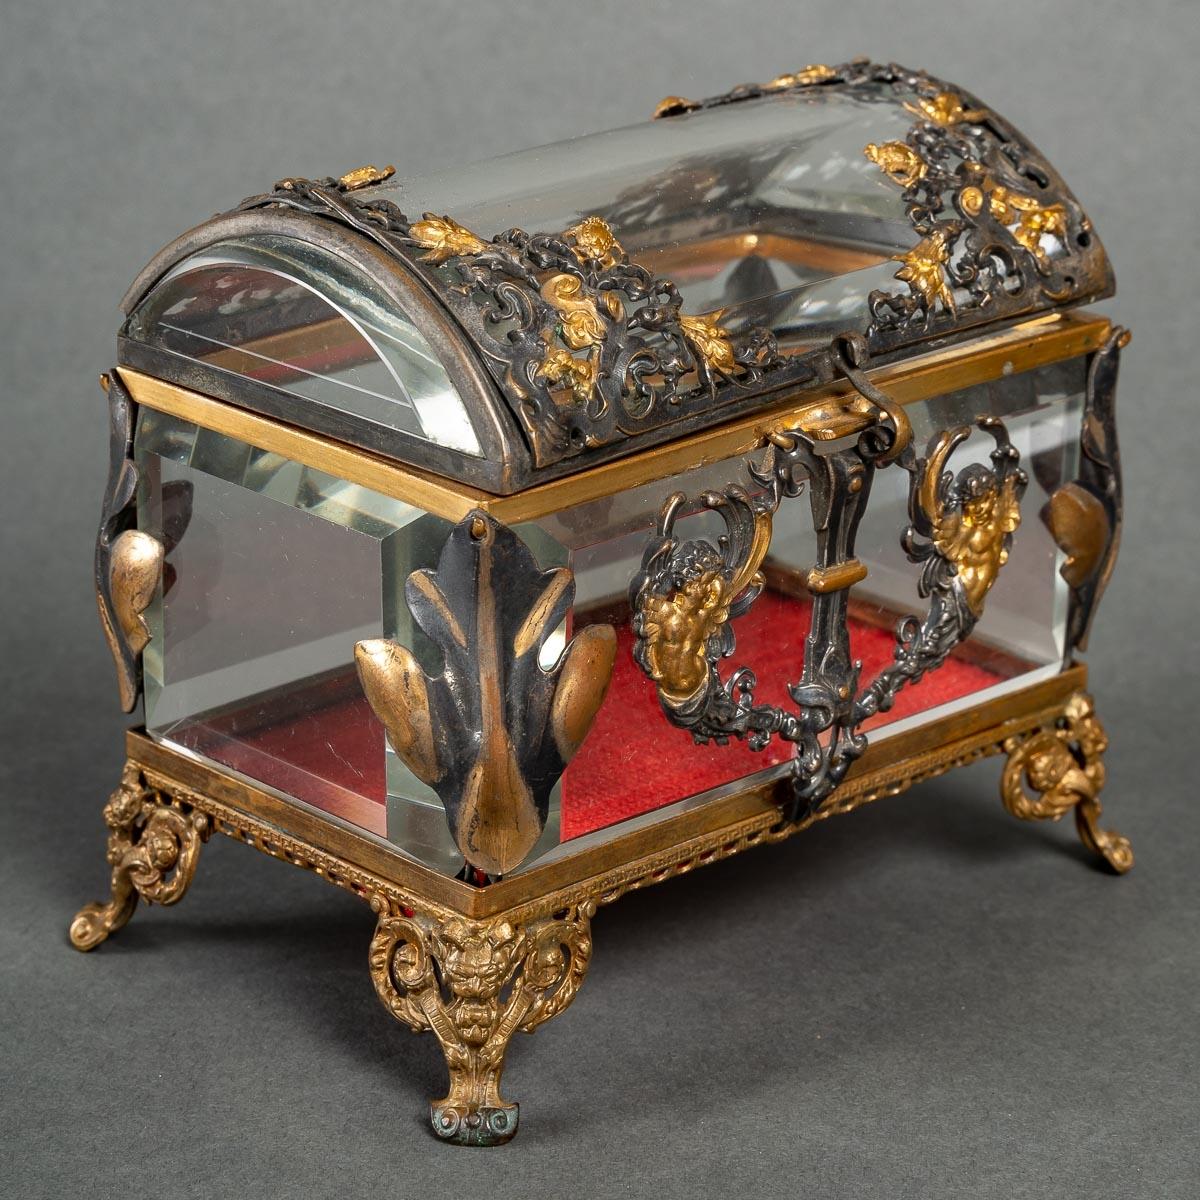 Magnifique boîte à bijoux en cristal, montée en argent et bronze doré.

Boîte à bijoux en cristal, montée en bronze doré et en argent, époque Napoléon III, XIXe siècle.

Dimensions : H : 11,5cm, L : 12cm, P : 9cm : H : 11,5cm, L : 12cm, P : 9cm